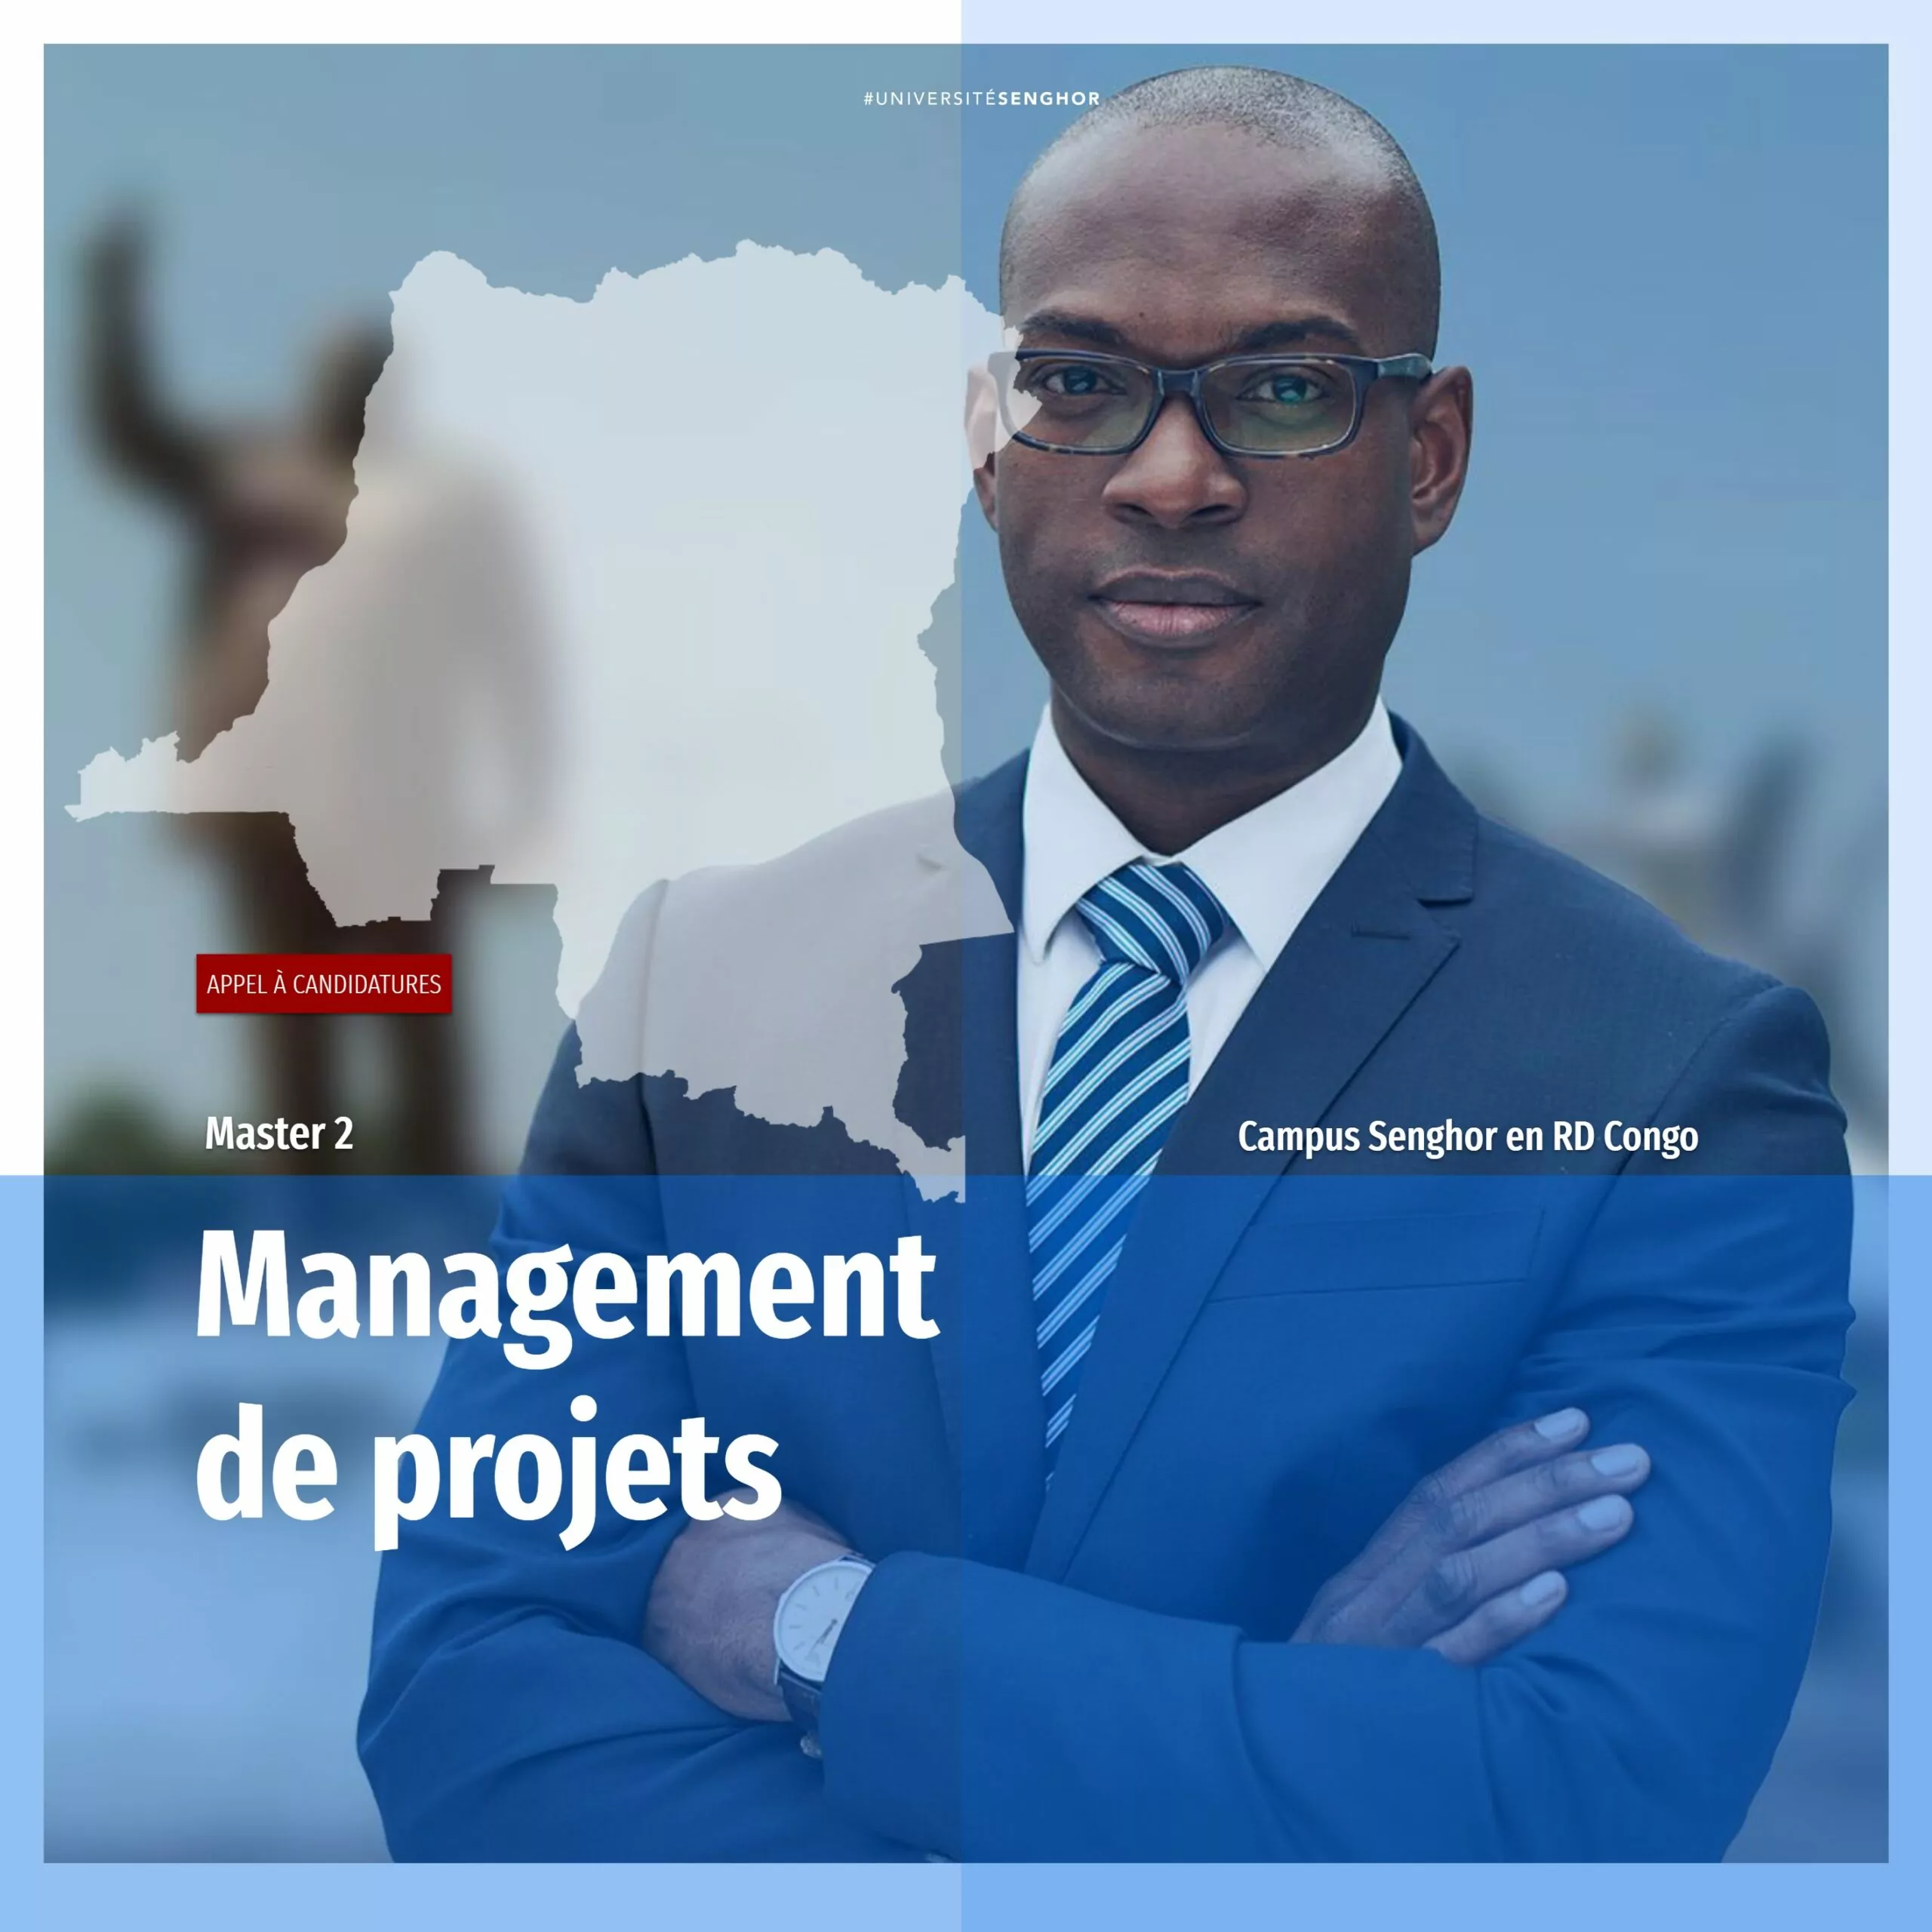 Le Campus Senghor en RDC lance un avis d’appel à candidature pour le programme de Master 2 en Management de projets